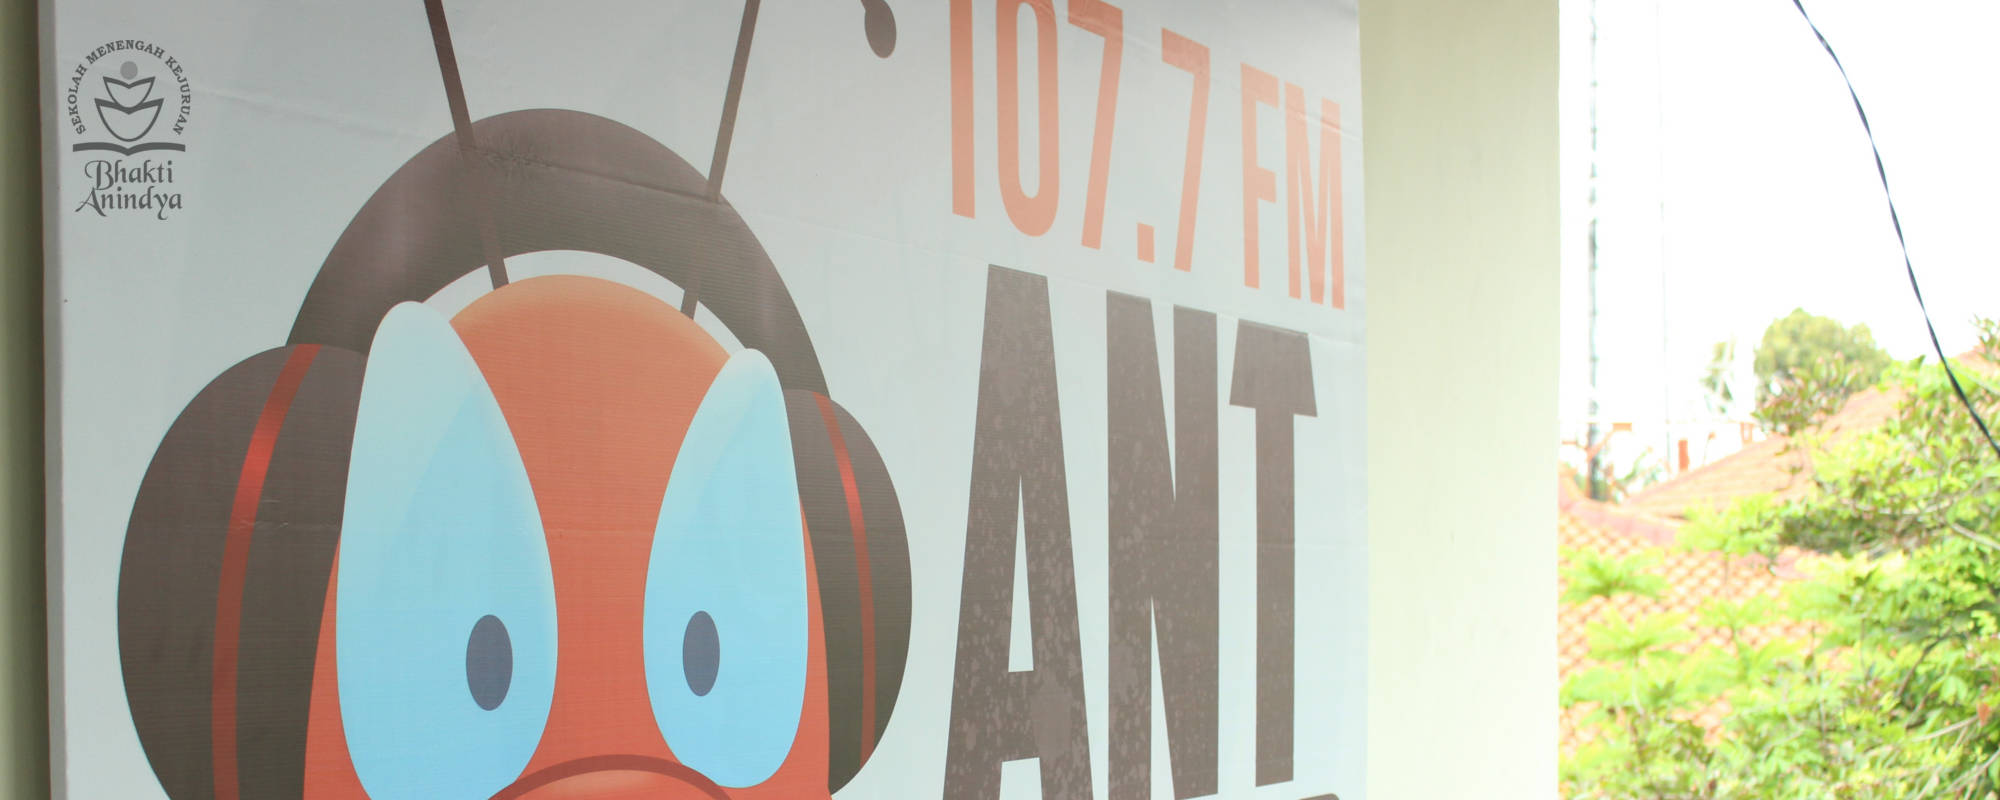 Ant Radio - Radio Komunitas SMK Bhakti Anindya Tangerang